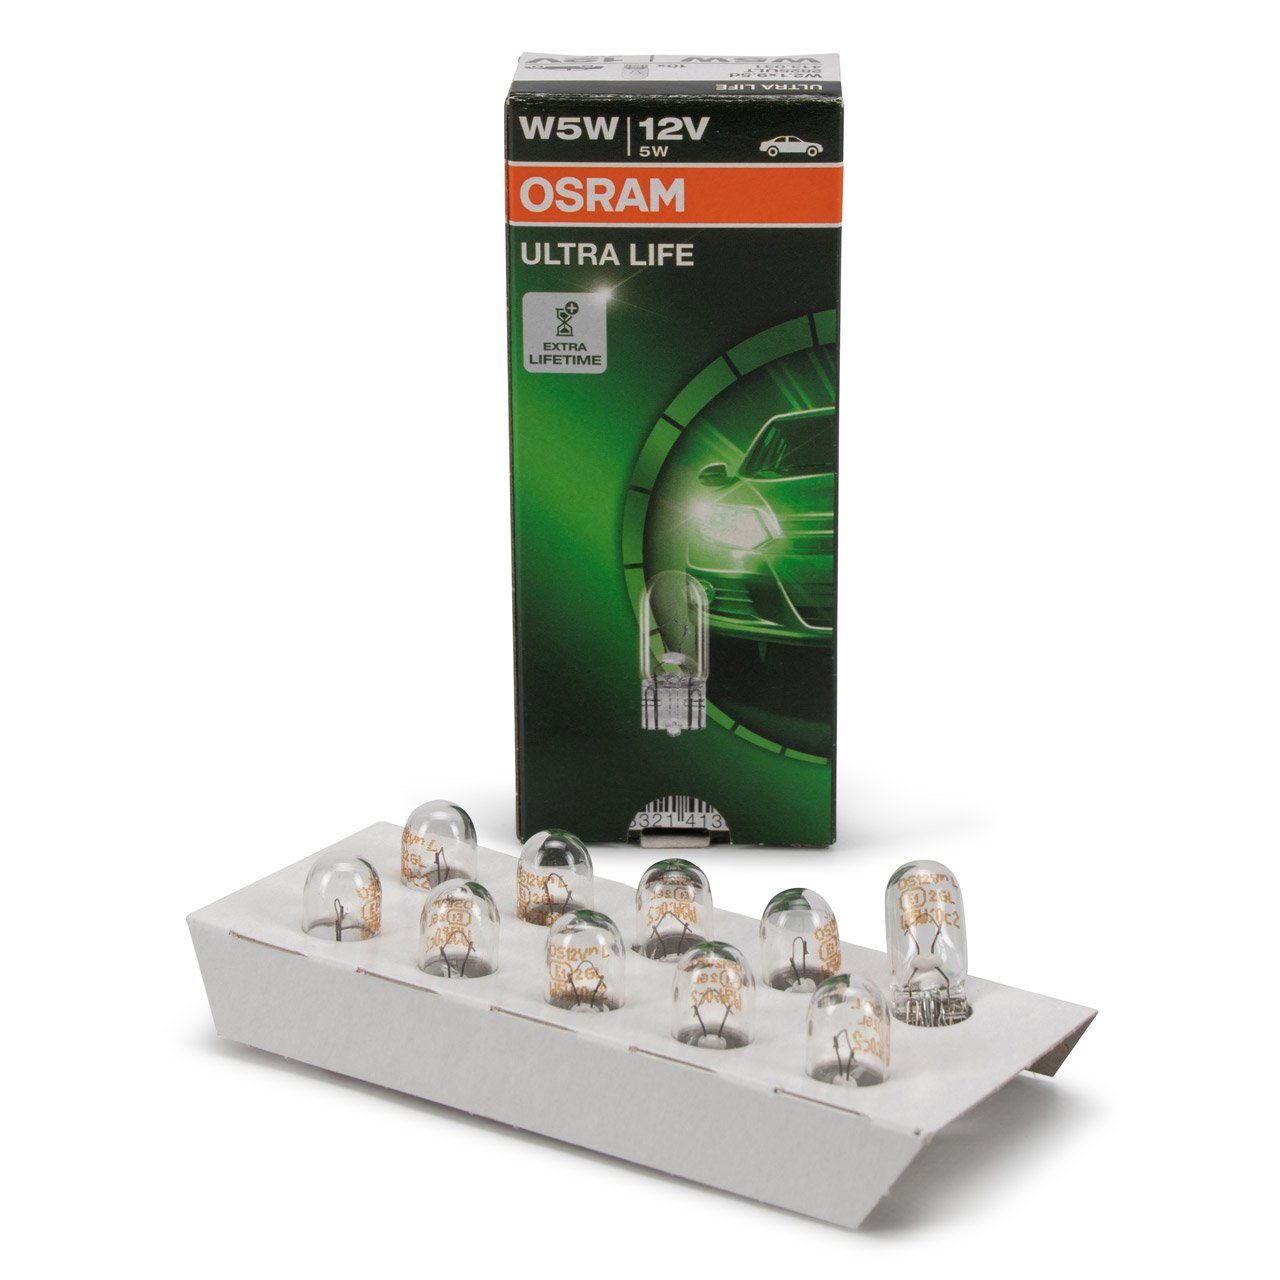 Osram H11 64211NL Halogen Lampen Night Breaker Laser +150% Duo Box (2  Stück)